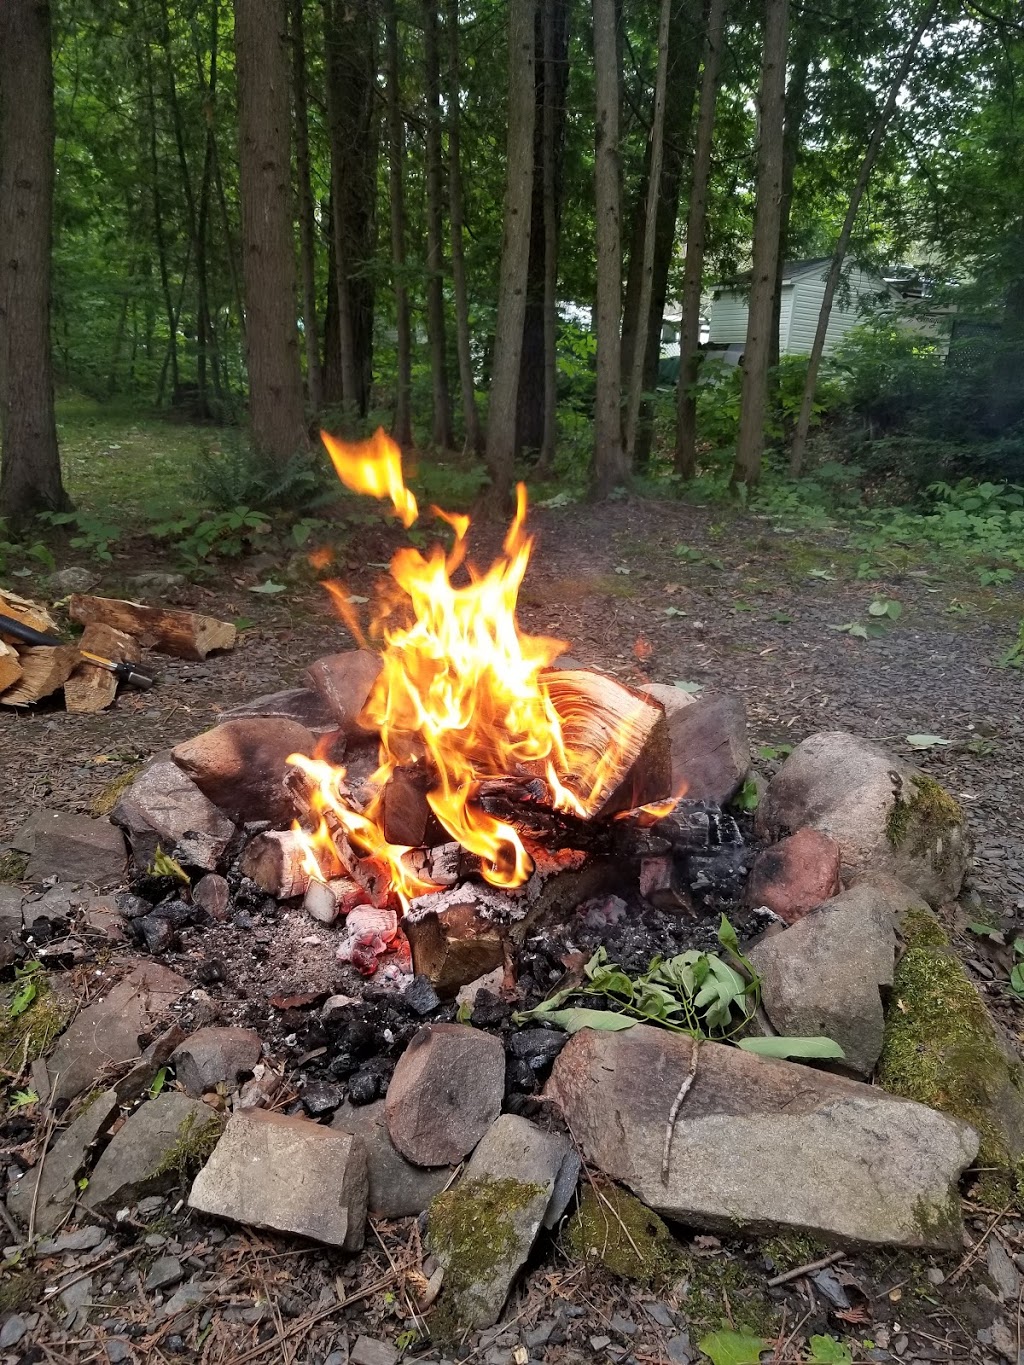 Camping écologique de Frelighsburg | 174 Route 237 sud, Frelighsburg, QC J0J 1C0, Canada | Phone: (877) 298-5259